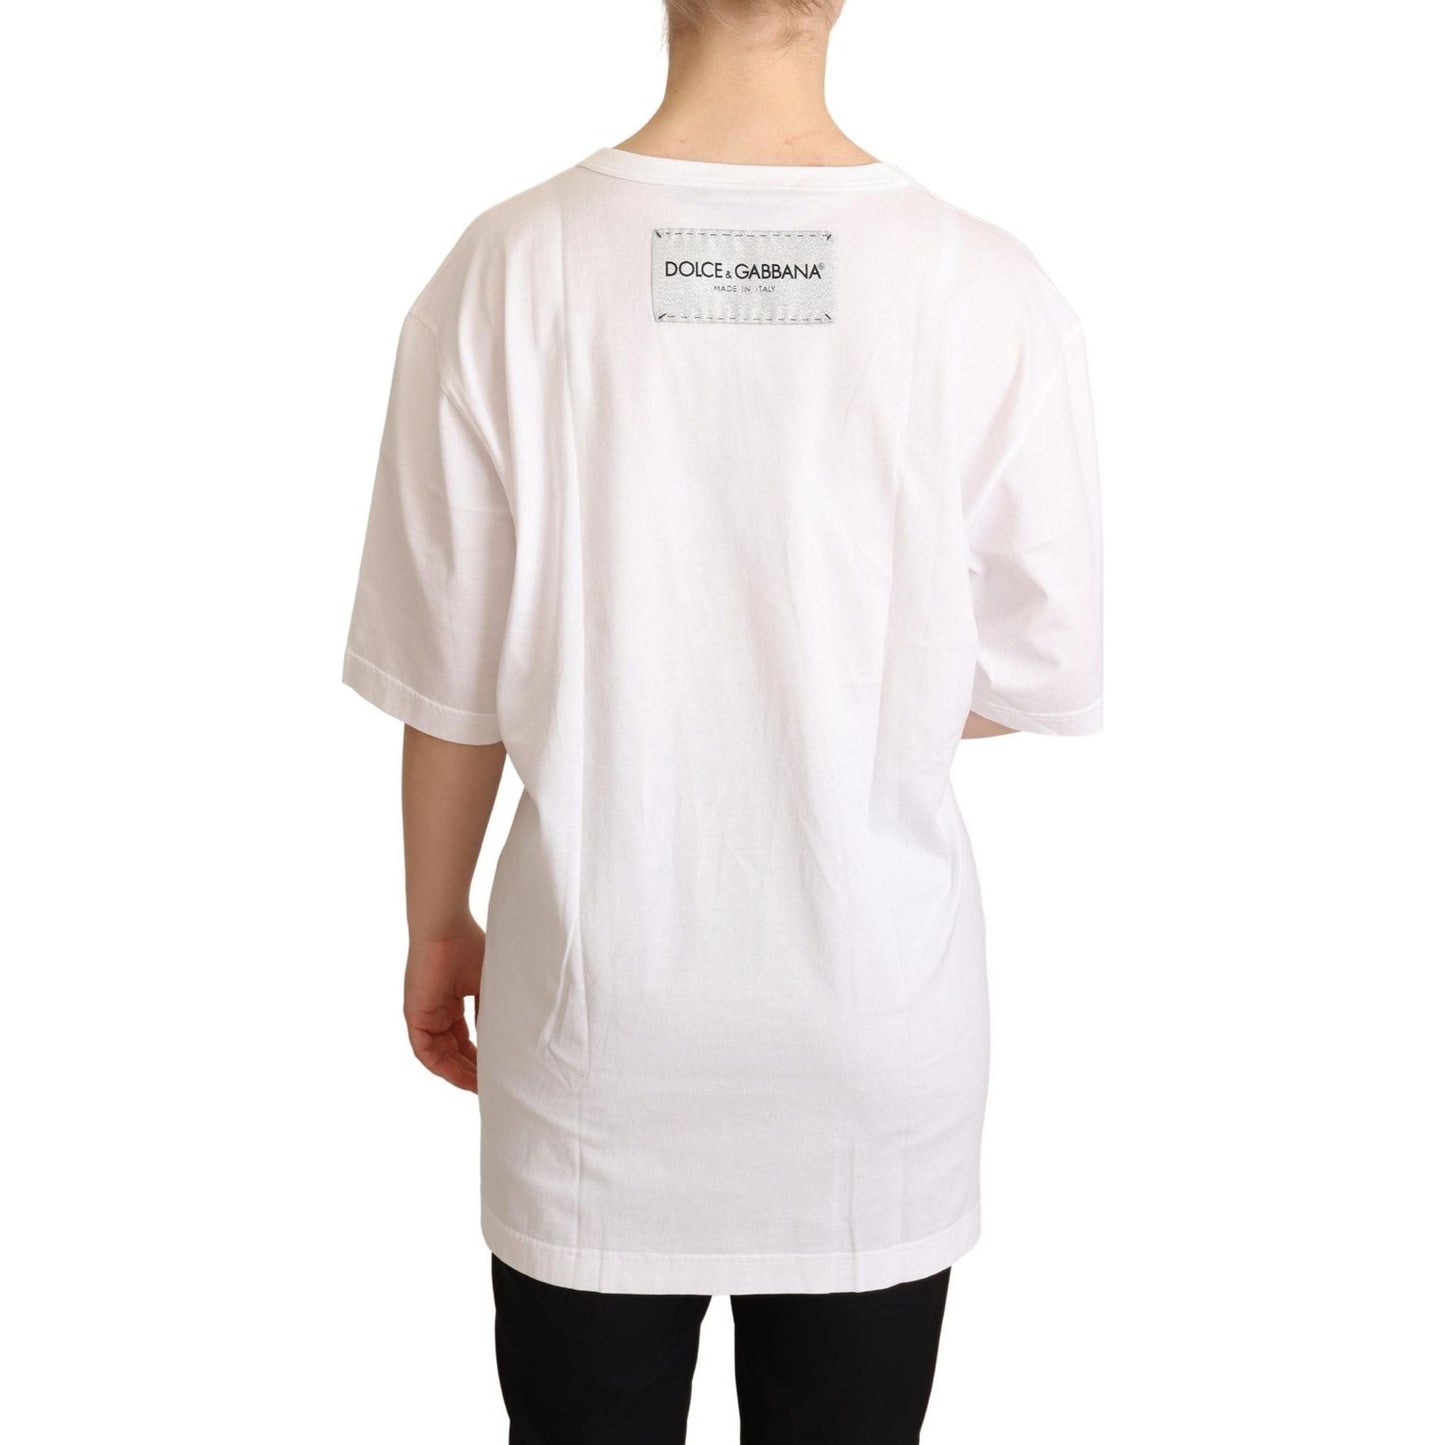 Dolce & Gabbana Elegant Motive Print Crewneck T-shirt WOMAN T-SHIRTS white-cotton-bellezza-motive-top-t-shirt